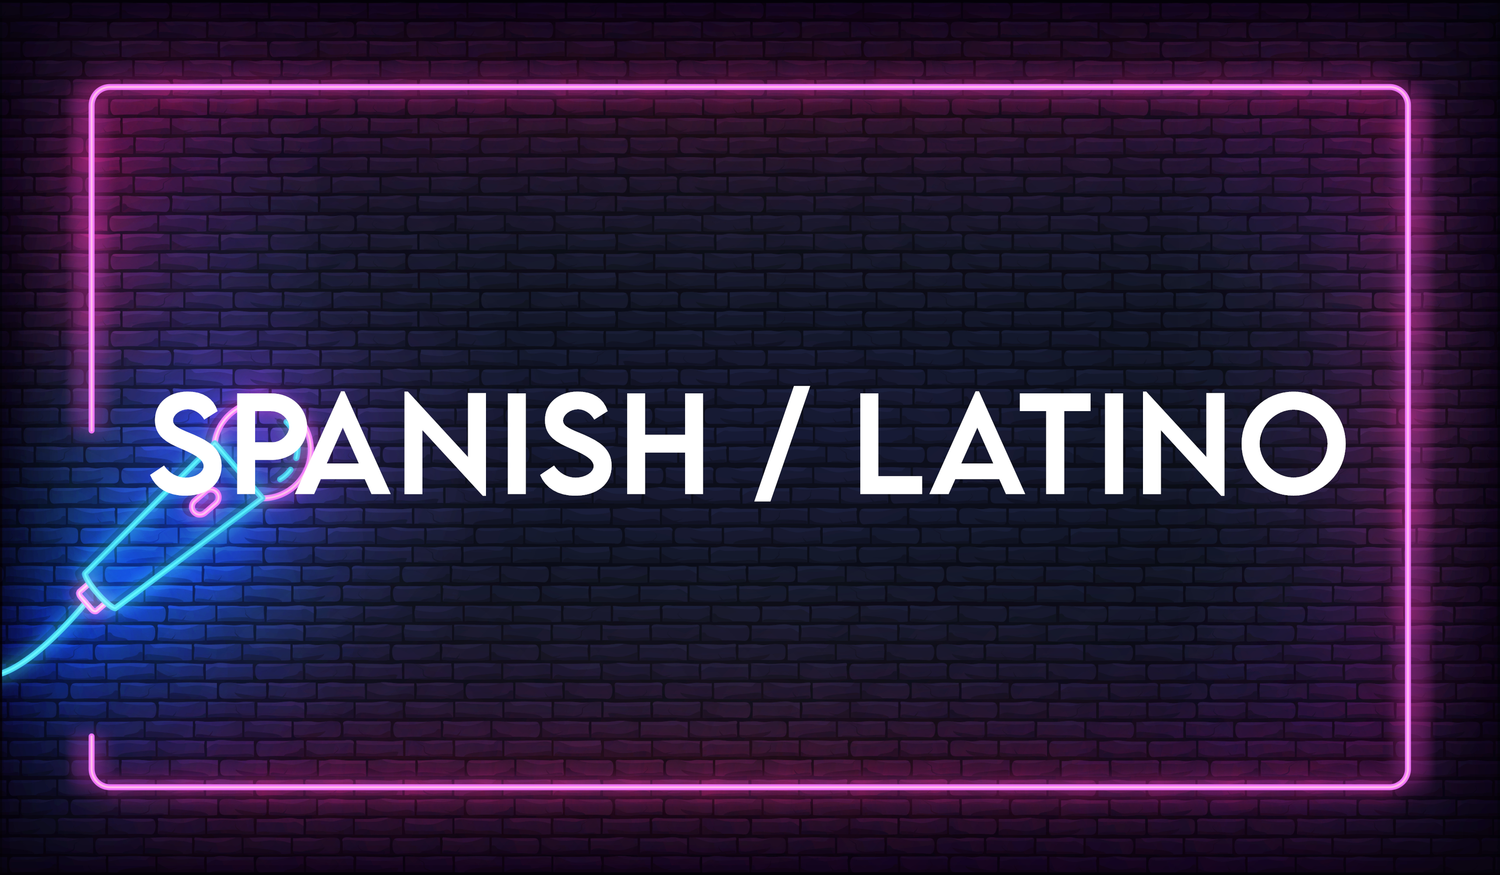 Spanish/Latino